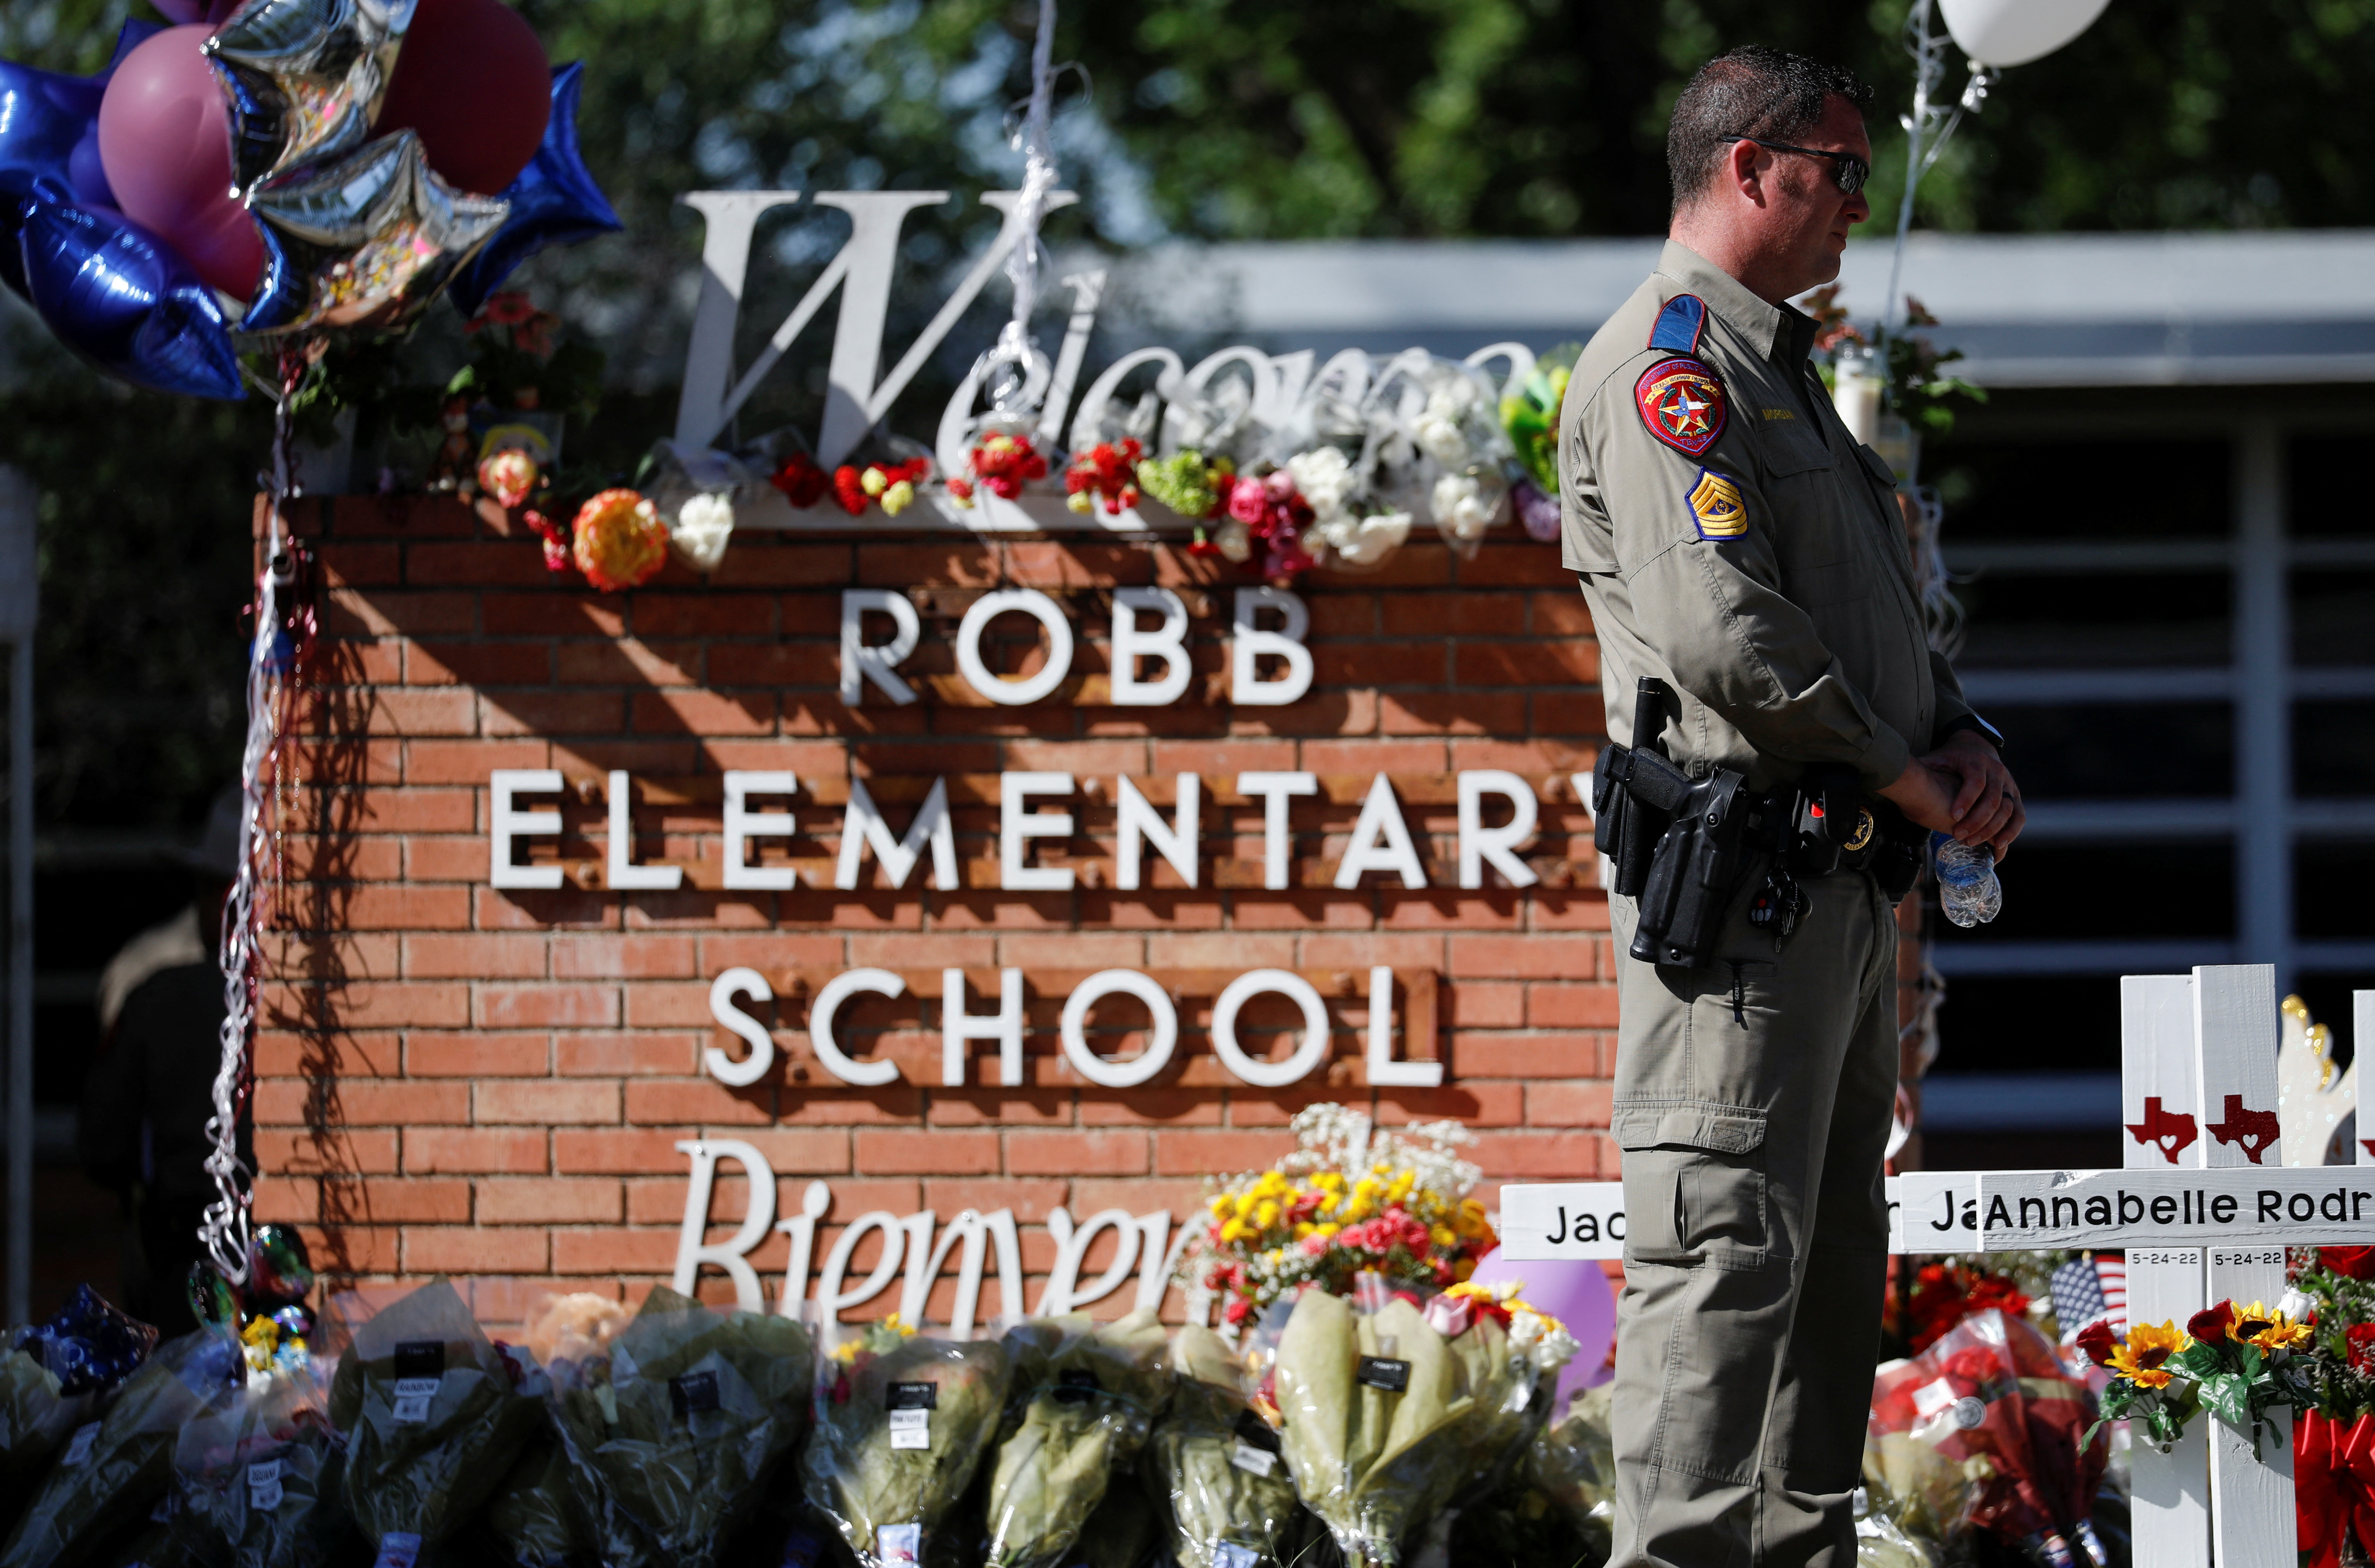 Las autoridades admitieron que la policía debería haber ingresado antes a la escuela de la Masacre de Texas: “Tomaron una decisión errónea”